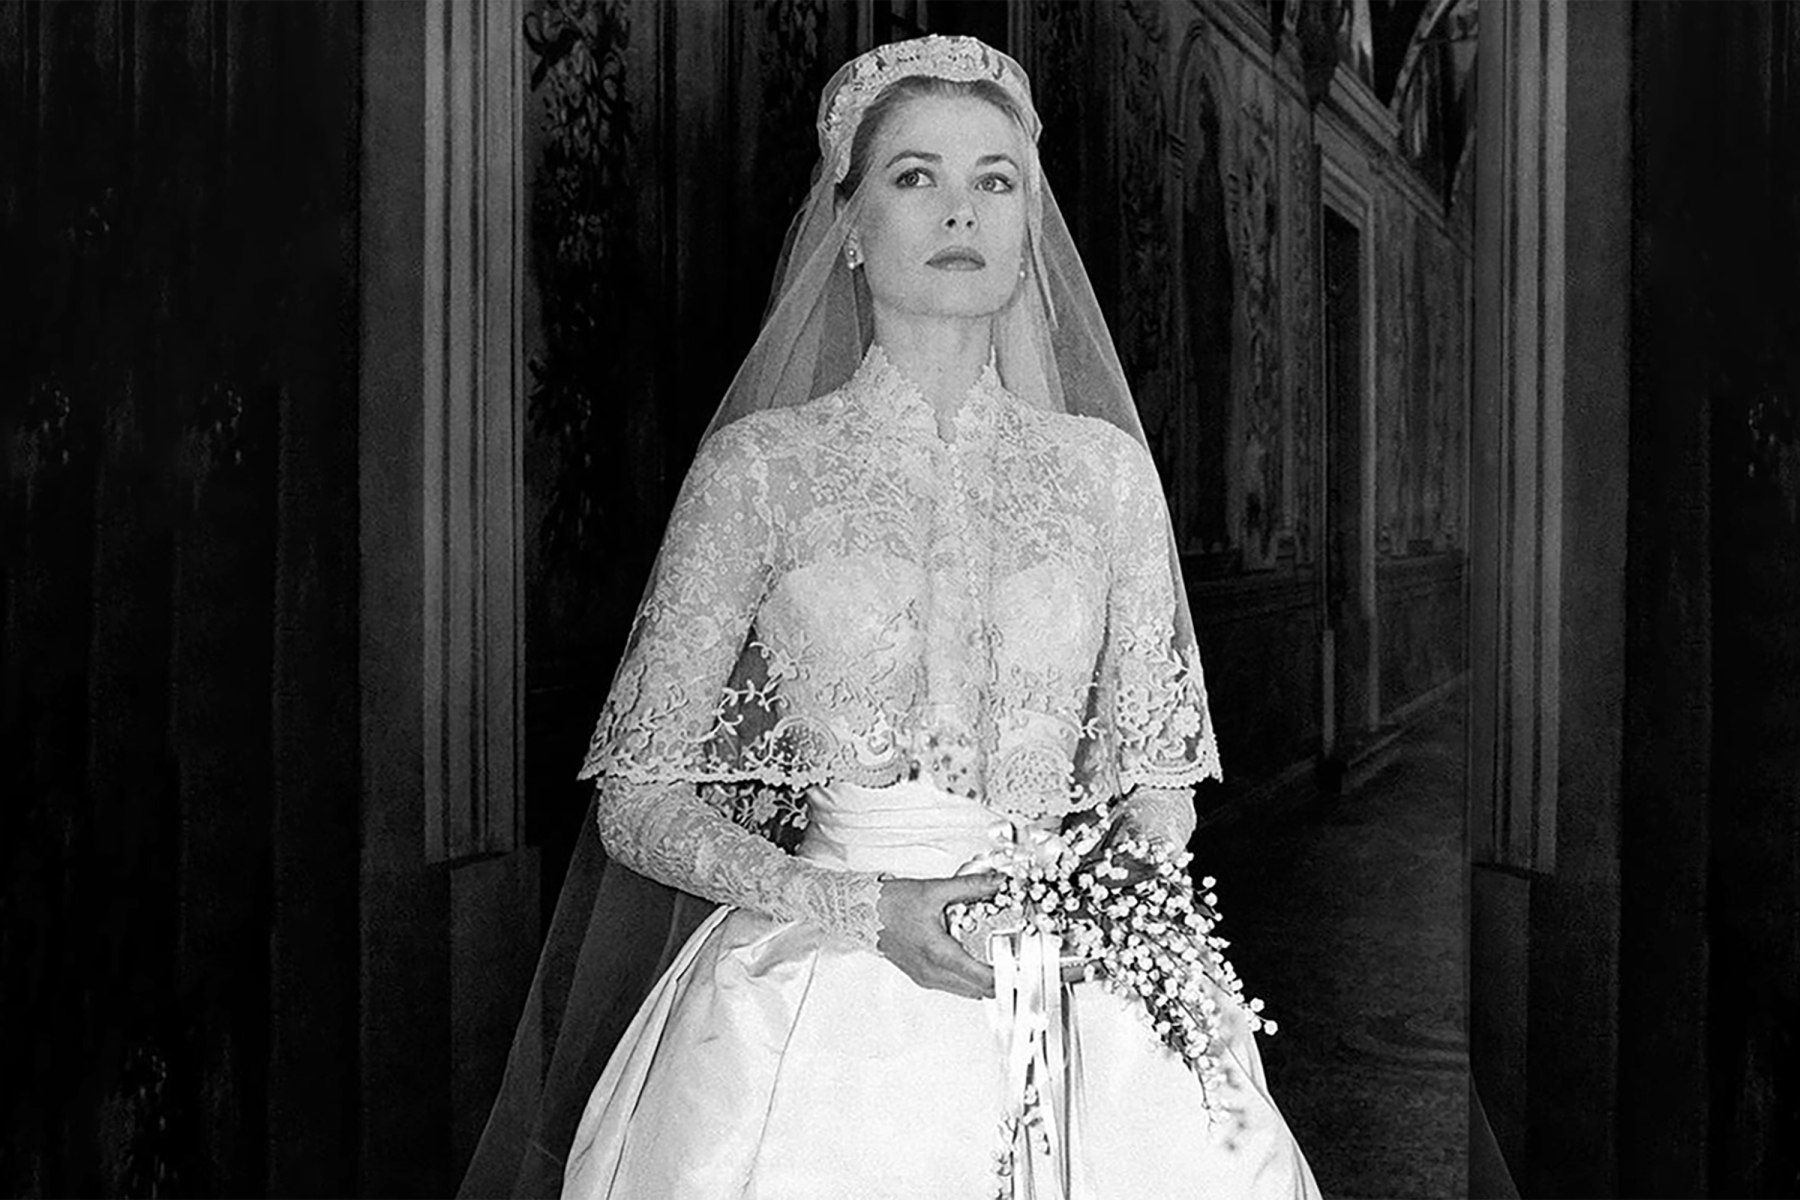 Press photo of Grace Kelly in The Wedding in Monaco, 1956